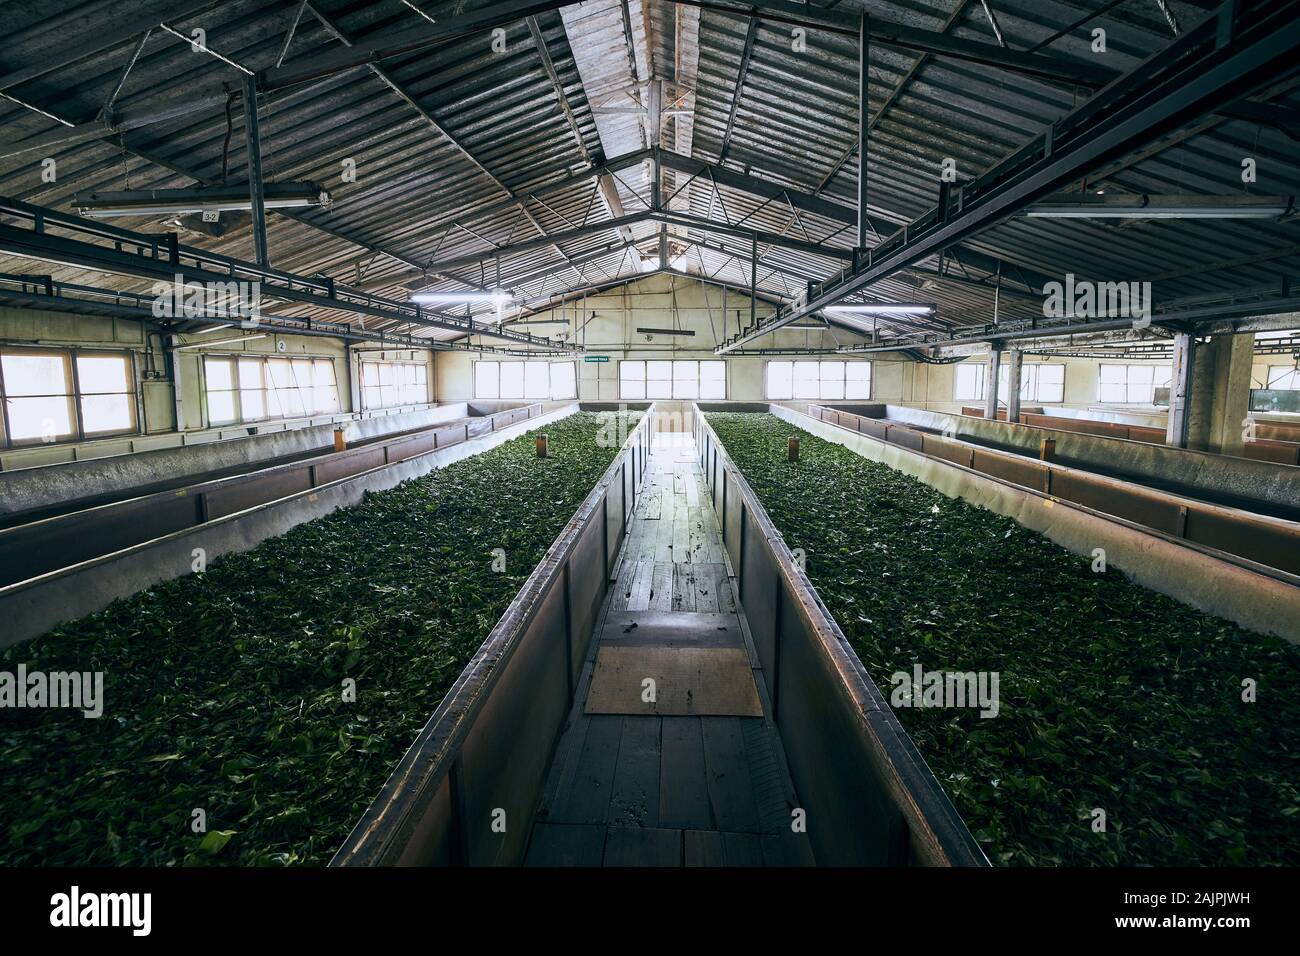 Le séchage des feuilles de thé. L'intérieur du processus de production, usine de thé de Sri Lanka. Banque D'Images